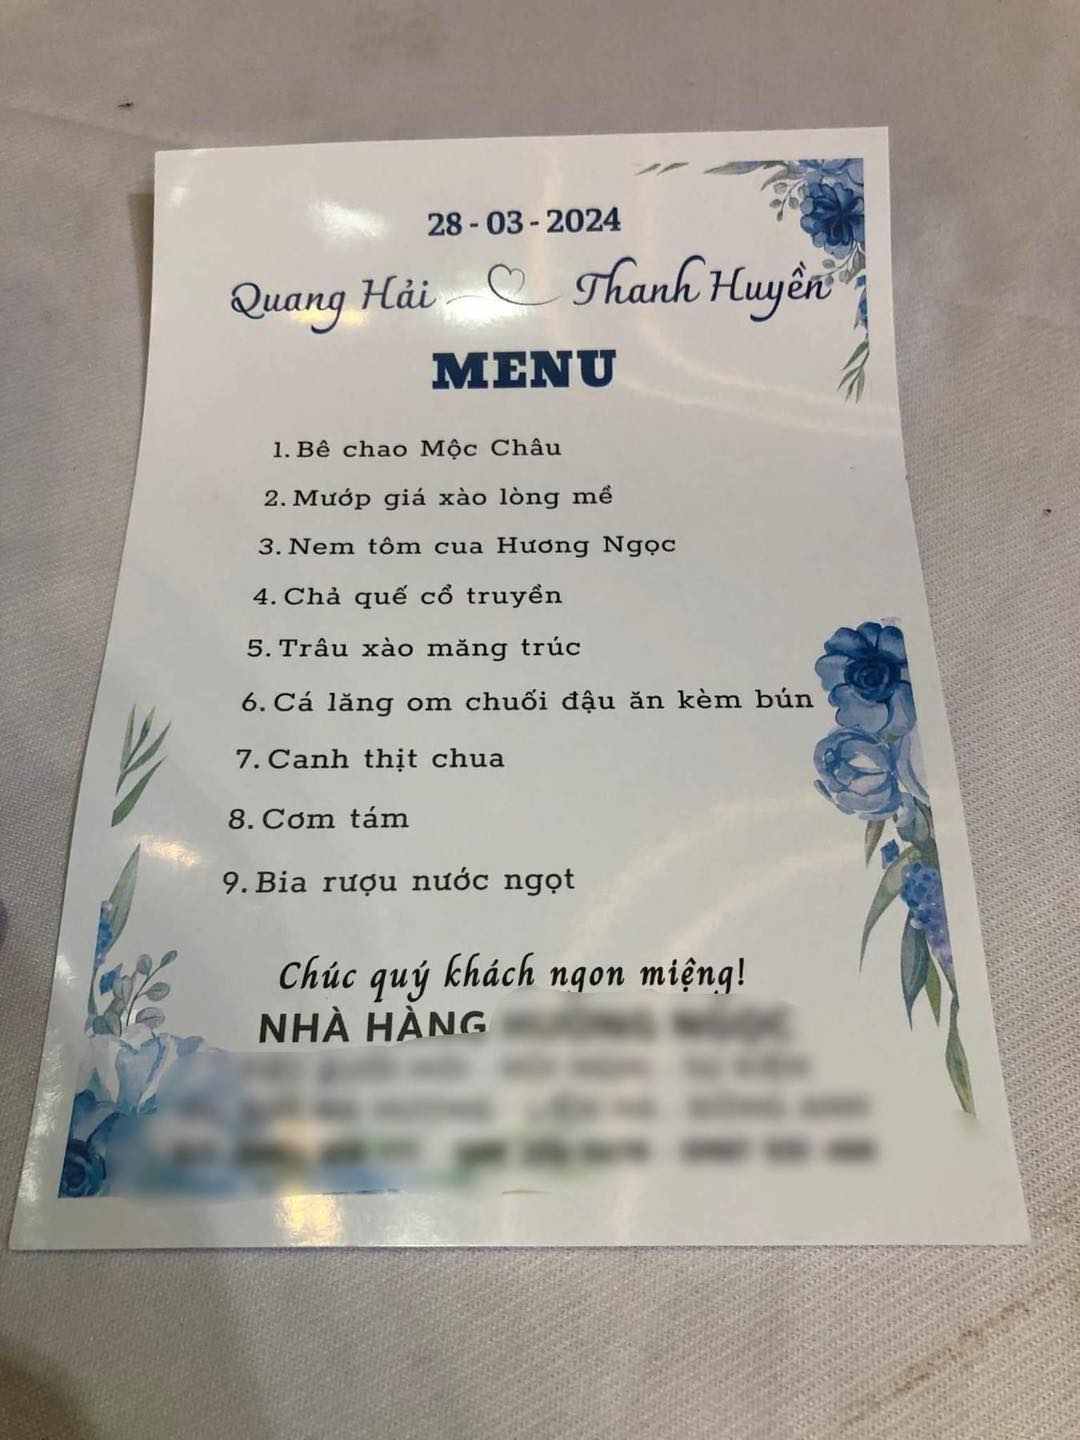 Món 'cơm tám' trong menu đám cưới của Quang Hải là cơm gì? - ảnh 1